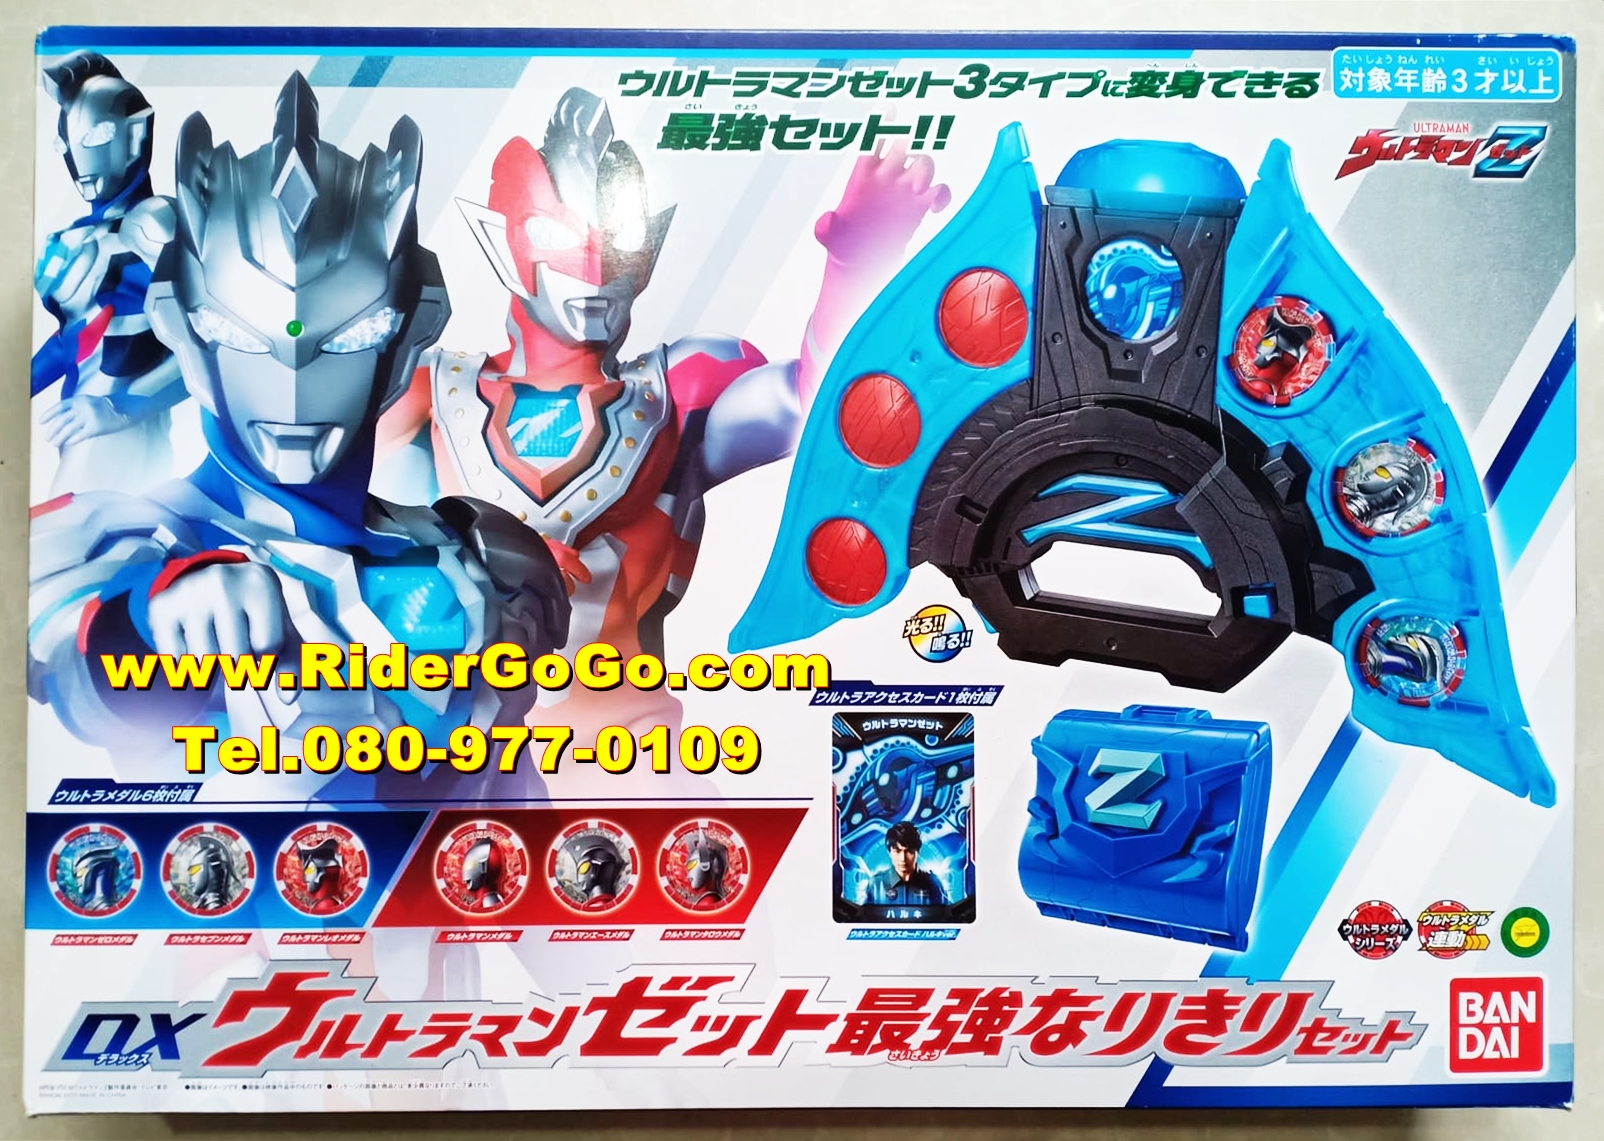 ที่แปลงร่างอุลตร้าแมนเซต ชุดรวมโฮลเดอร์เก็บเมดัล อุลตร้าเซตไรเซอร์ Ultraman Z (DX Ultraman Z Riser & Ultra access card & Ultra medal Narikiri Set) ของใหม่ของแท้Bandai ประเทศญี่ปุ่น รูปที่ 1